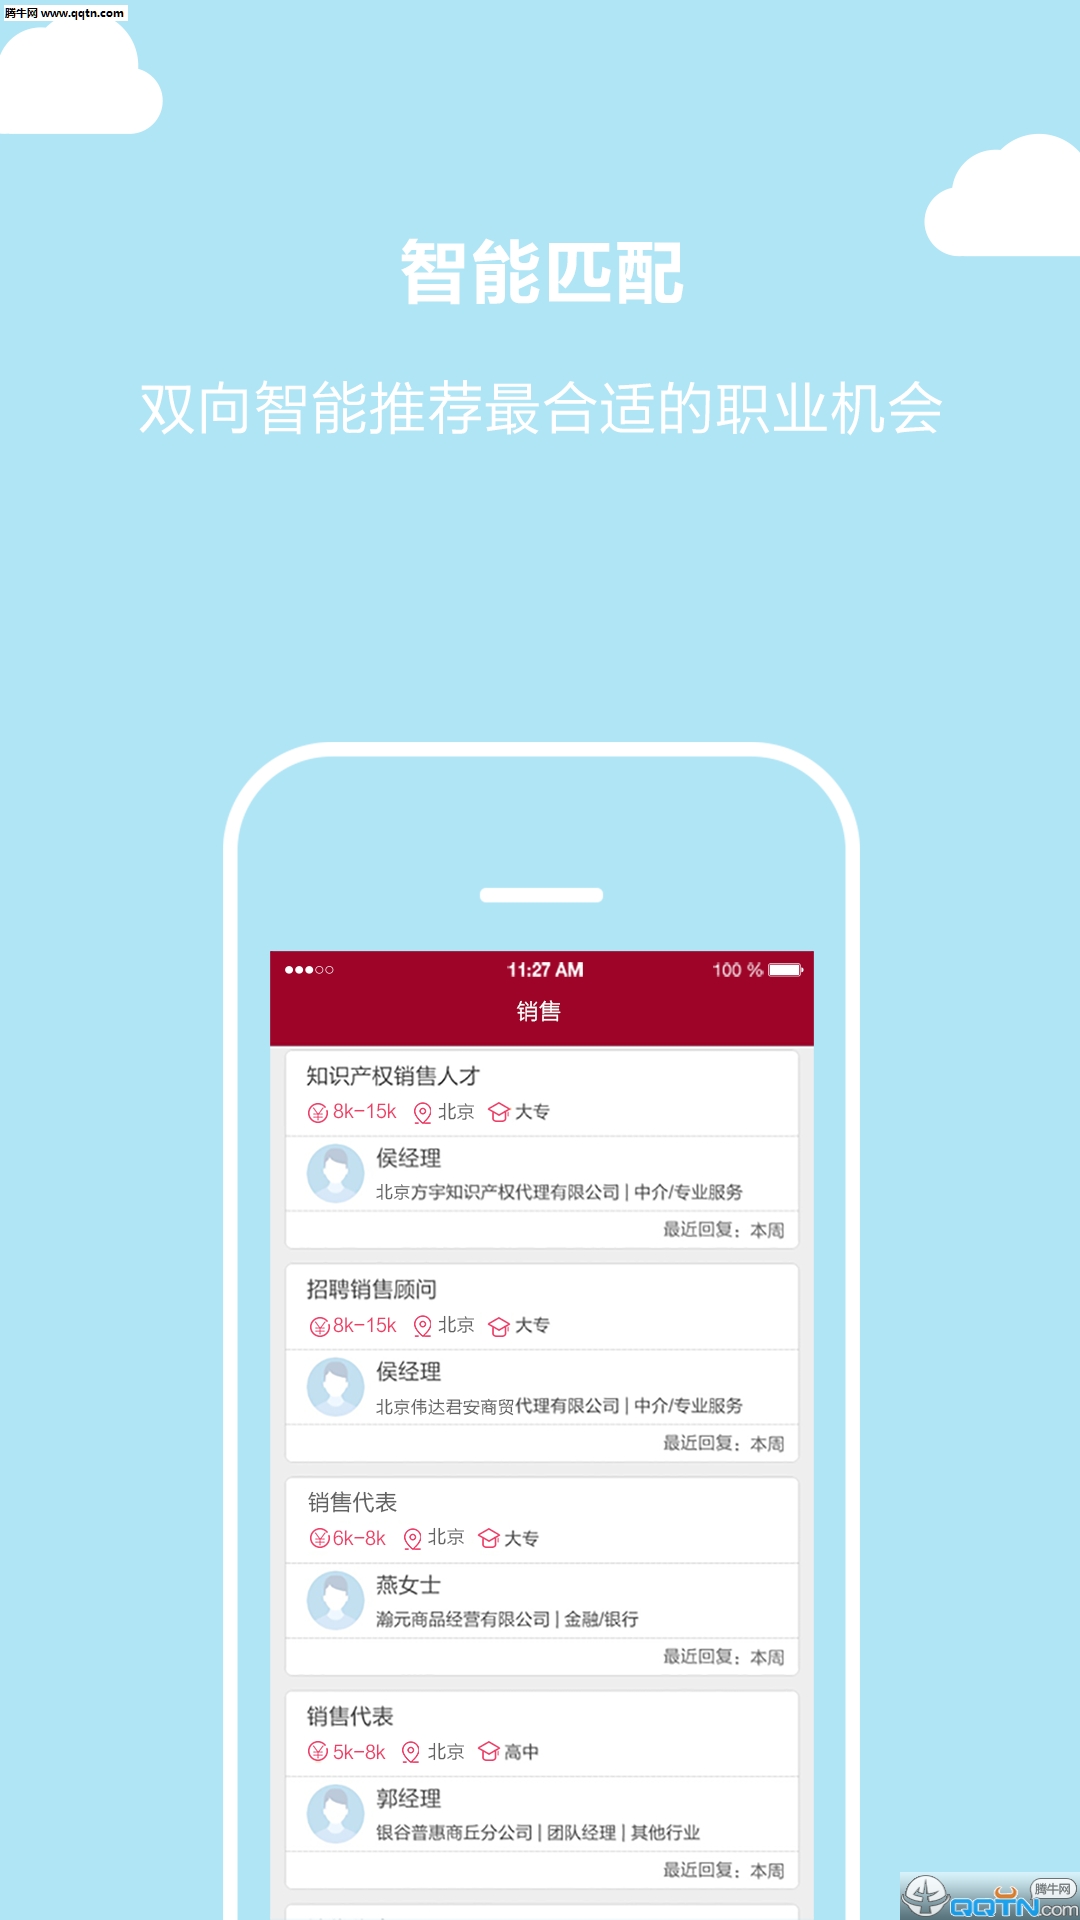 北京直聘App正版下载